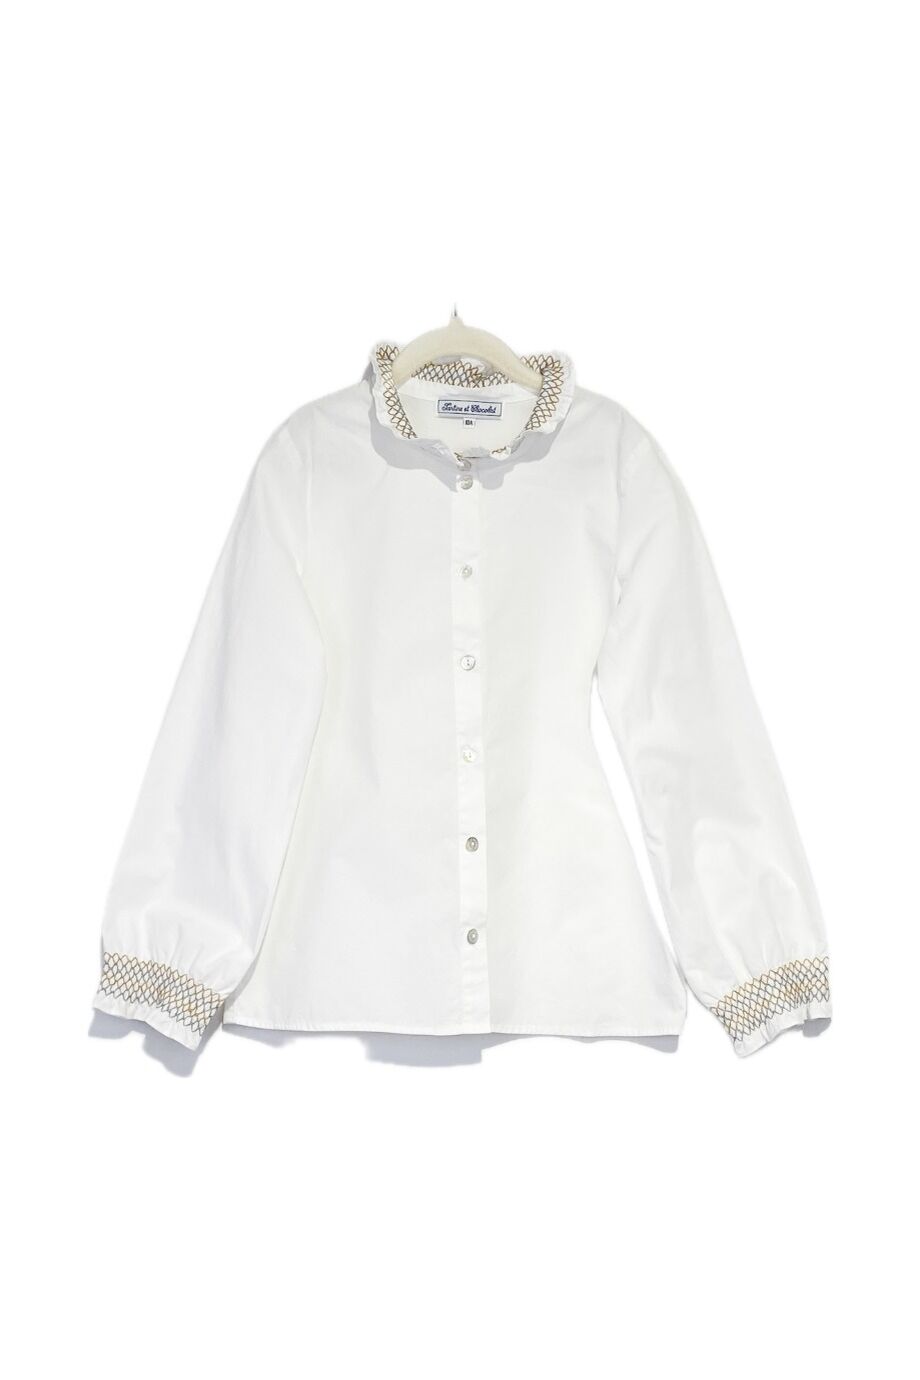 image 1 Детская рубашка белого цвета с вышивкой на воротнике и манжетах